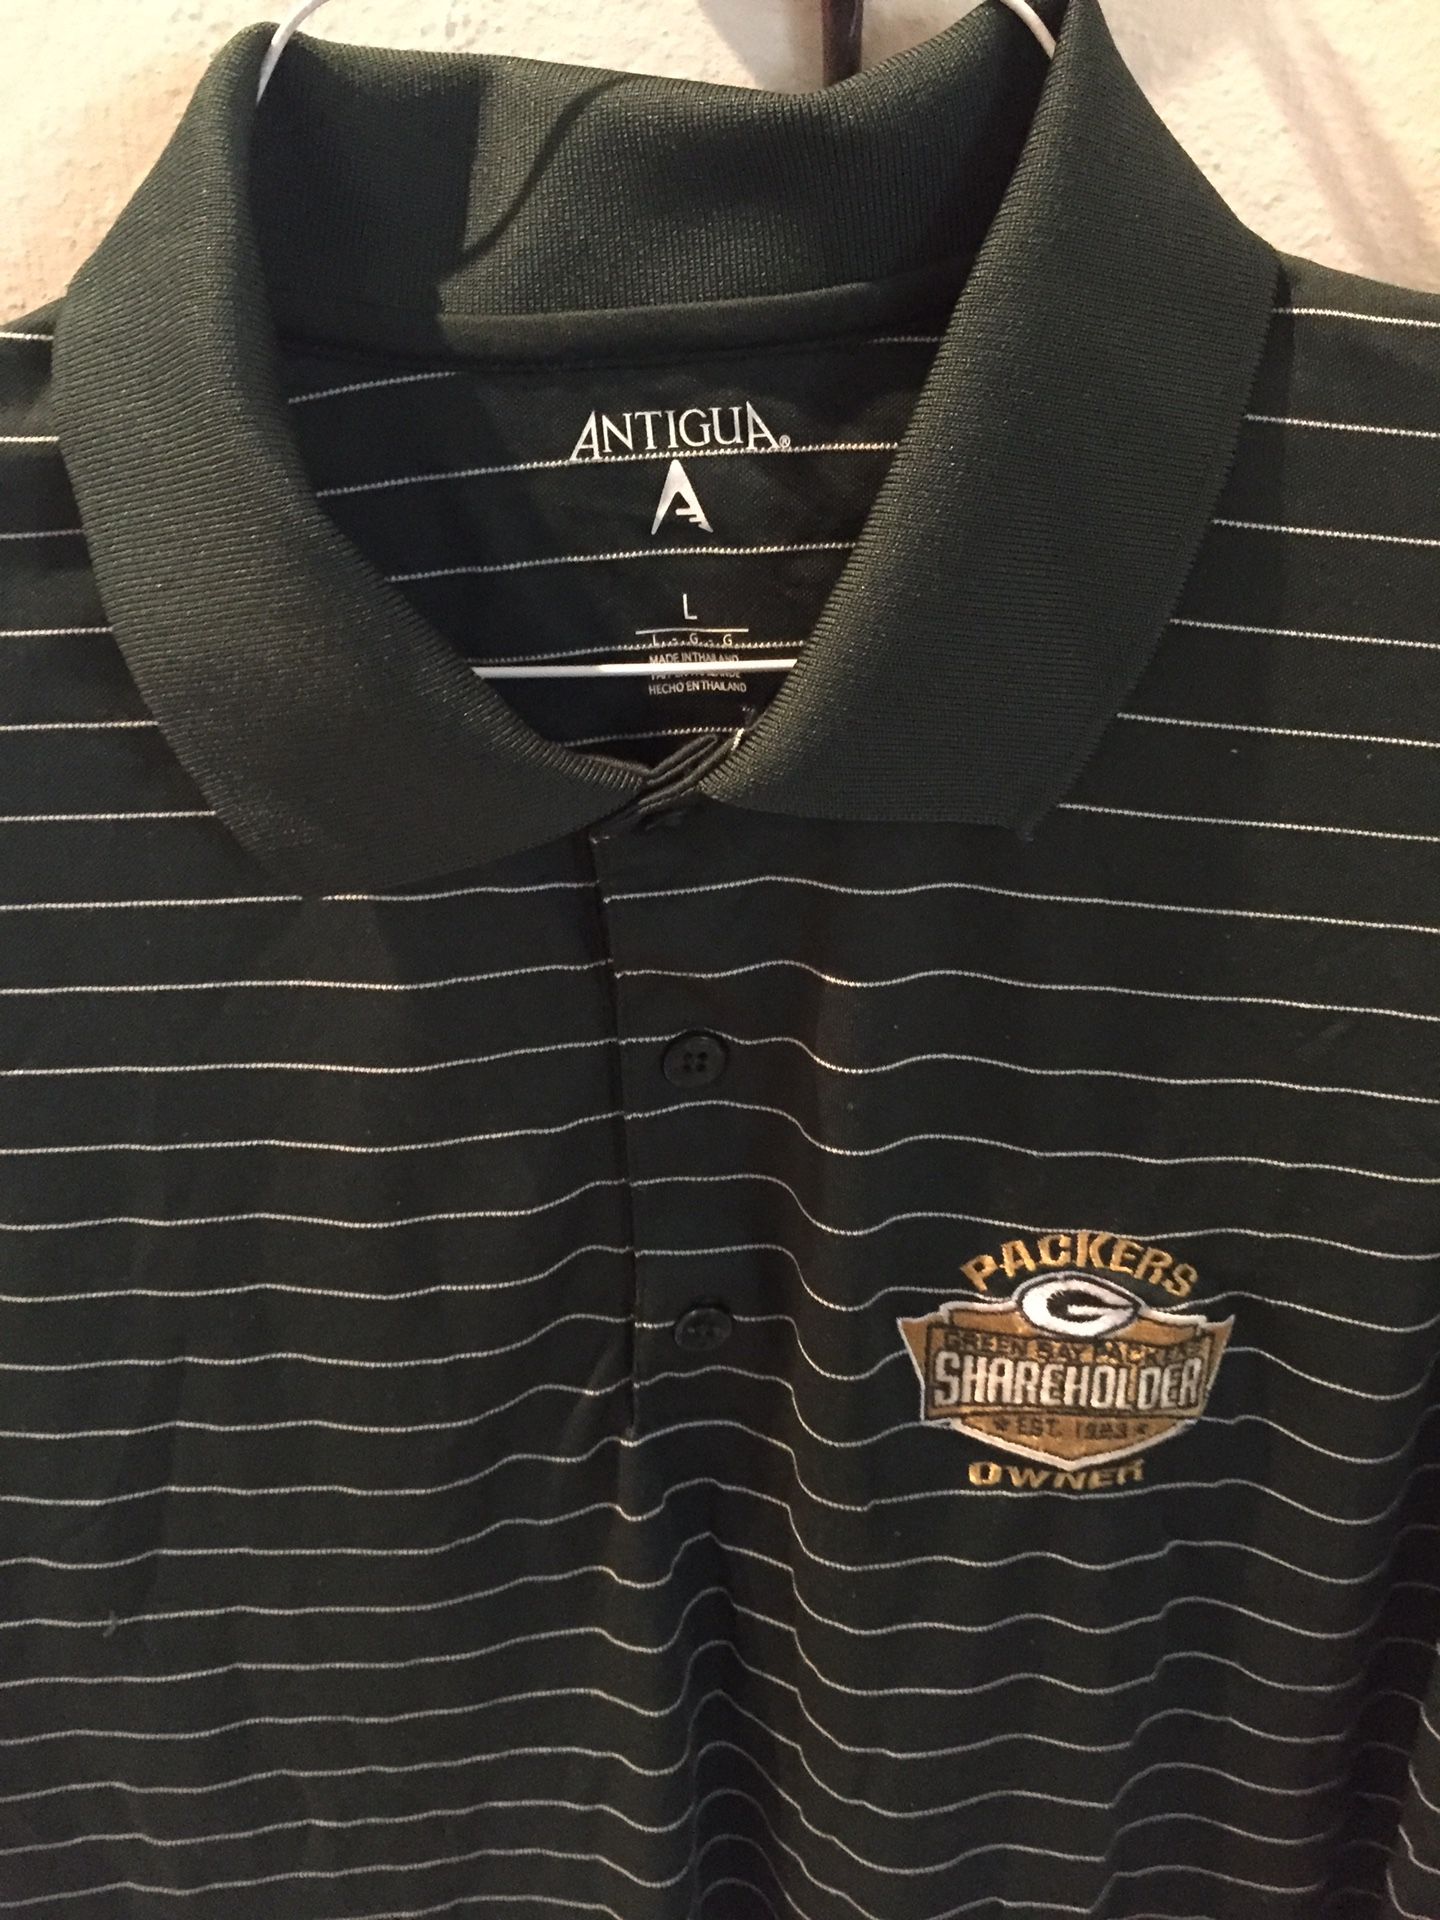 Antigua Packers Shareholders Golf Shirt